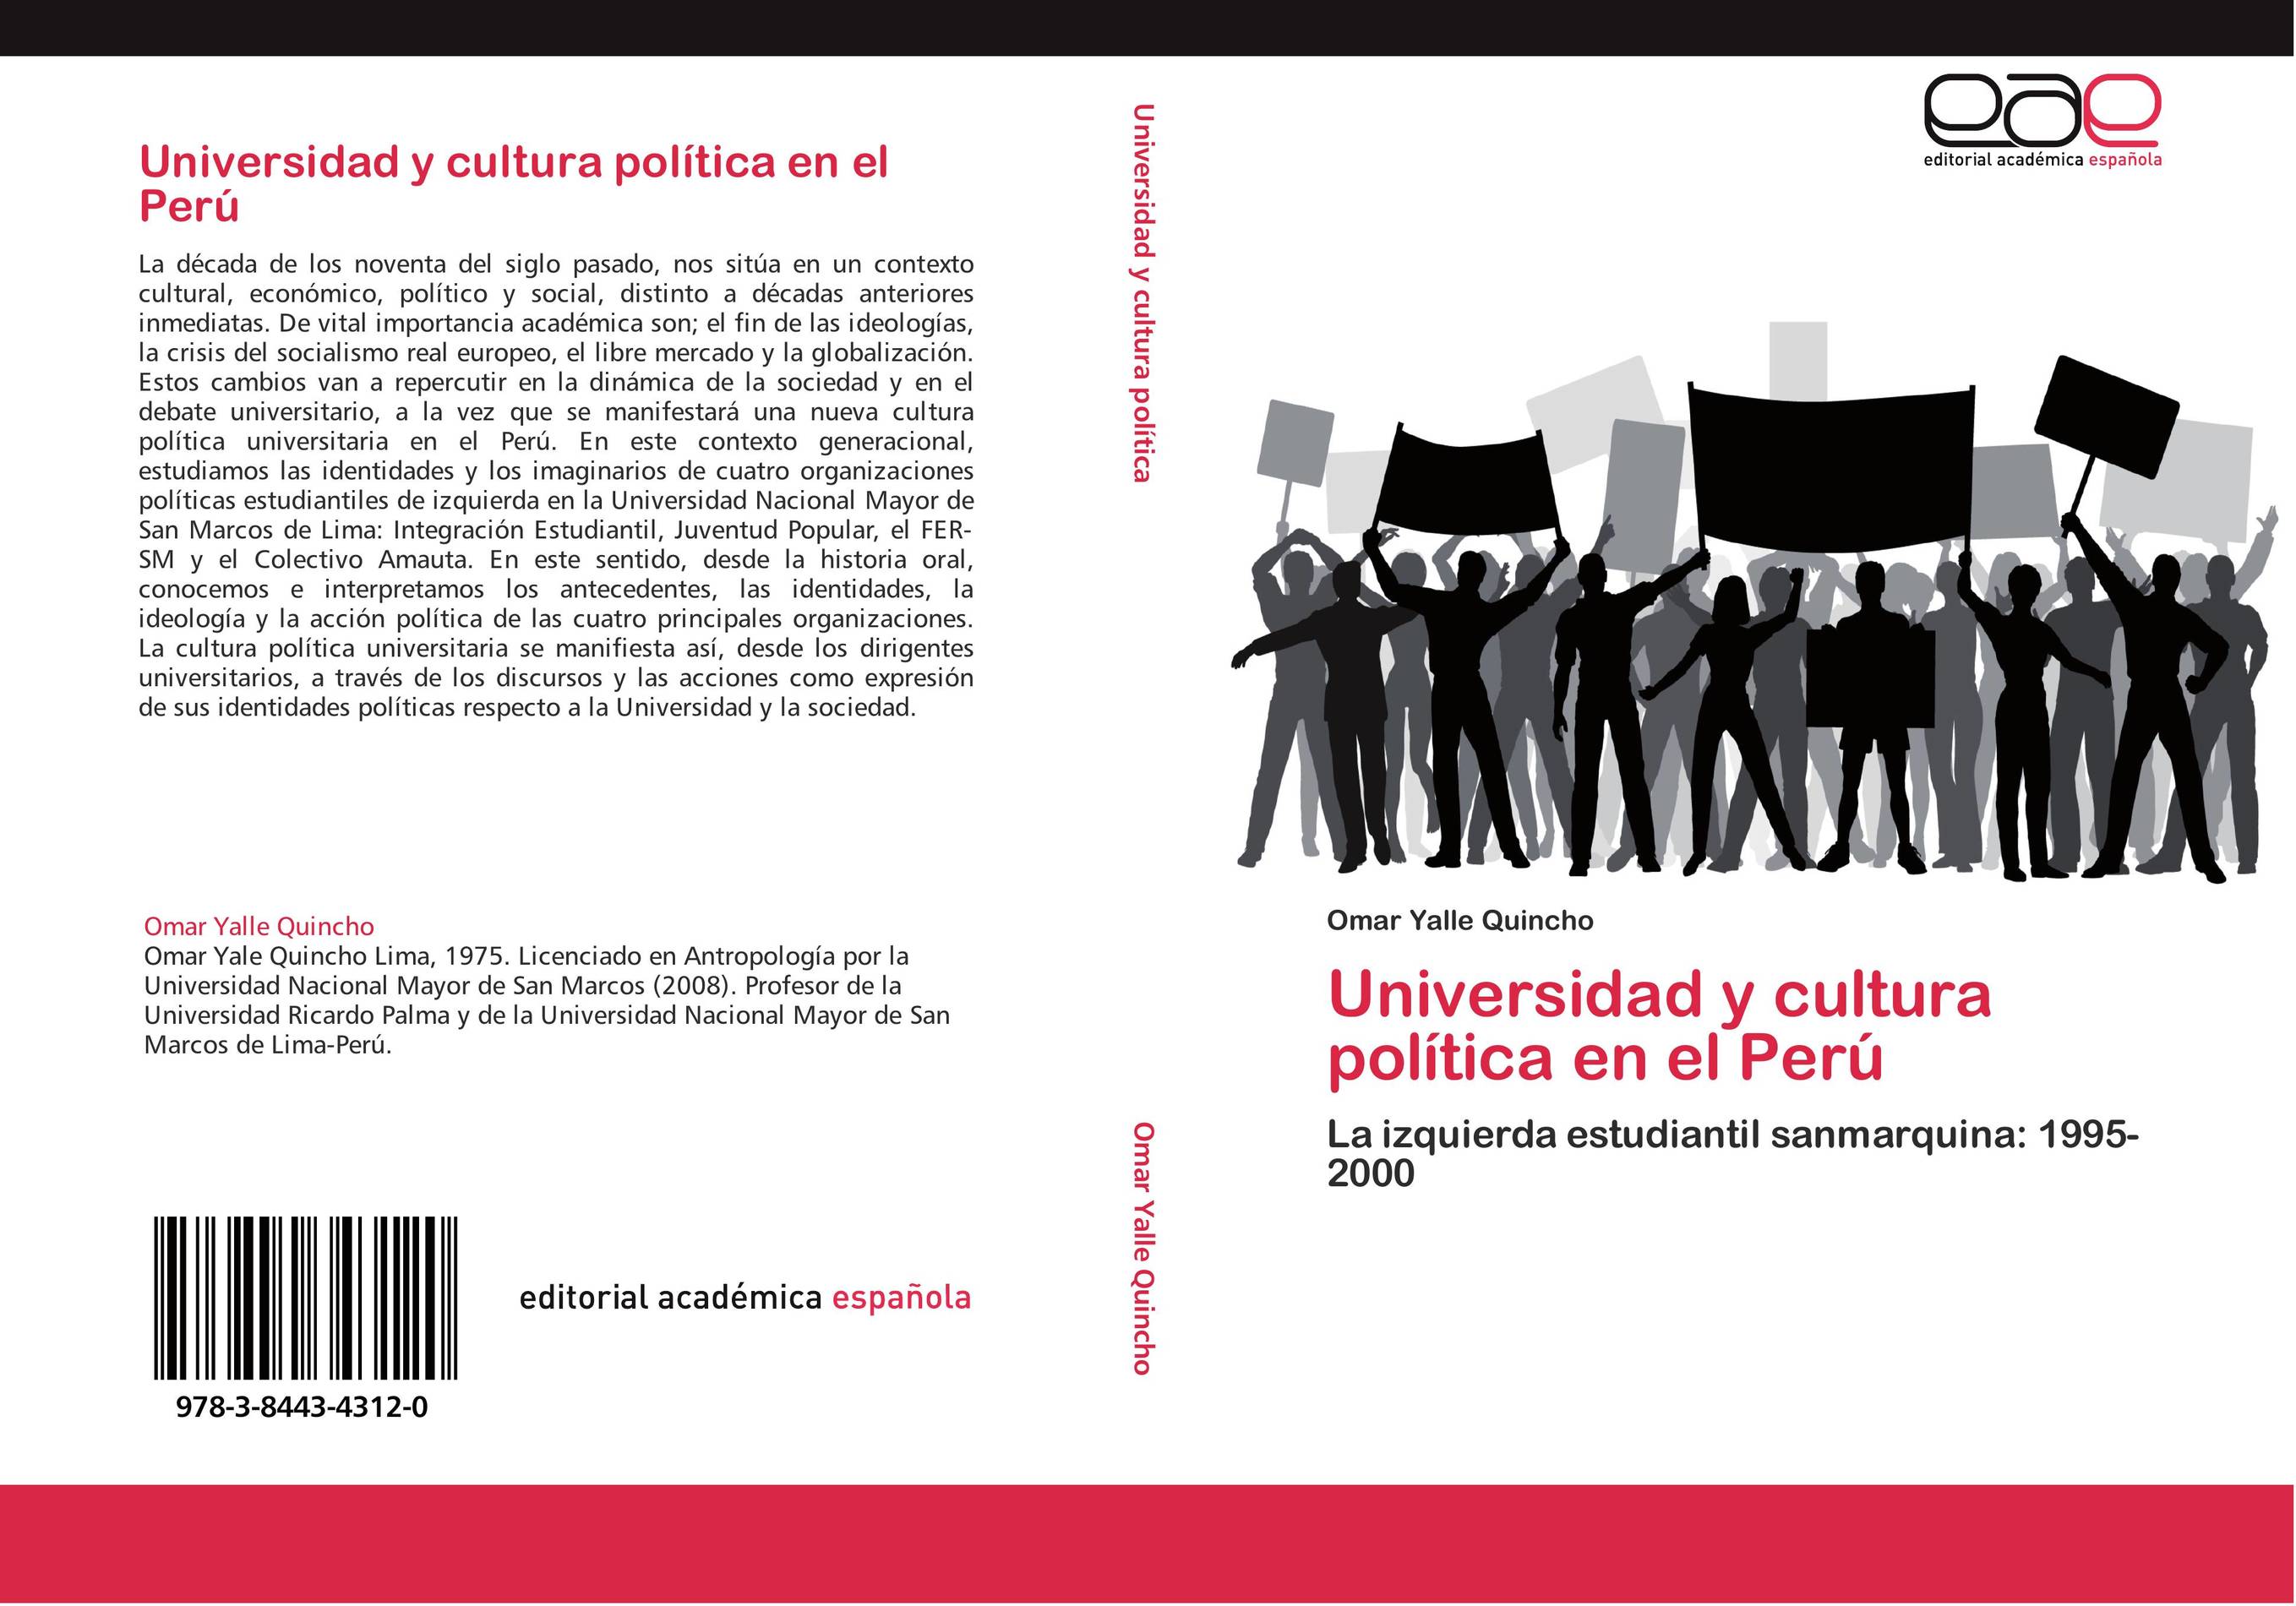 Universidad y cultura política en el Perú